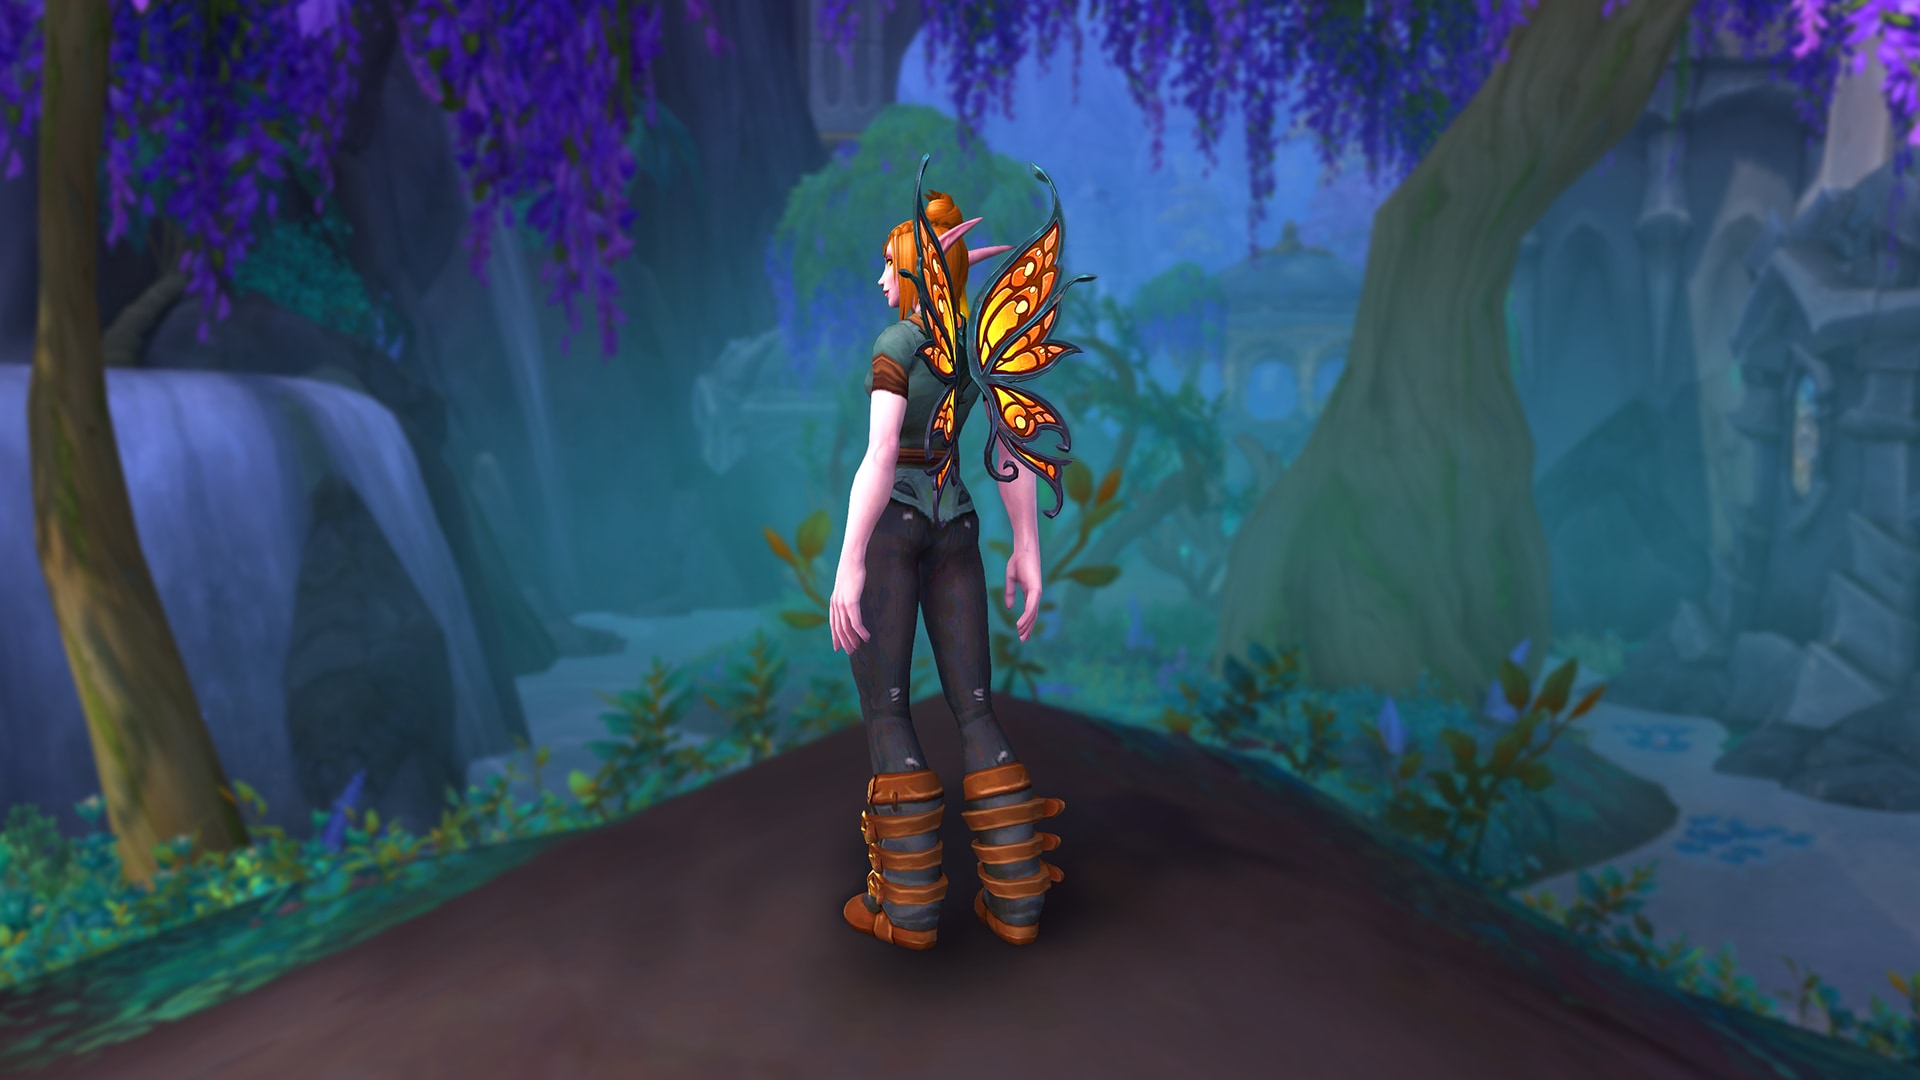 Elfa de sangre en una escena pacífica con alas de mariposa monarca en la espalda